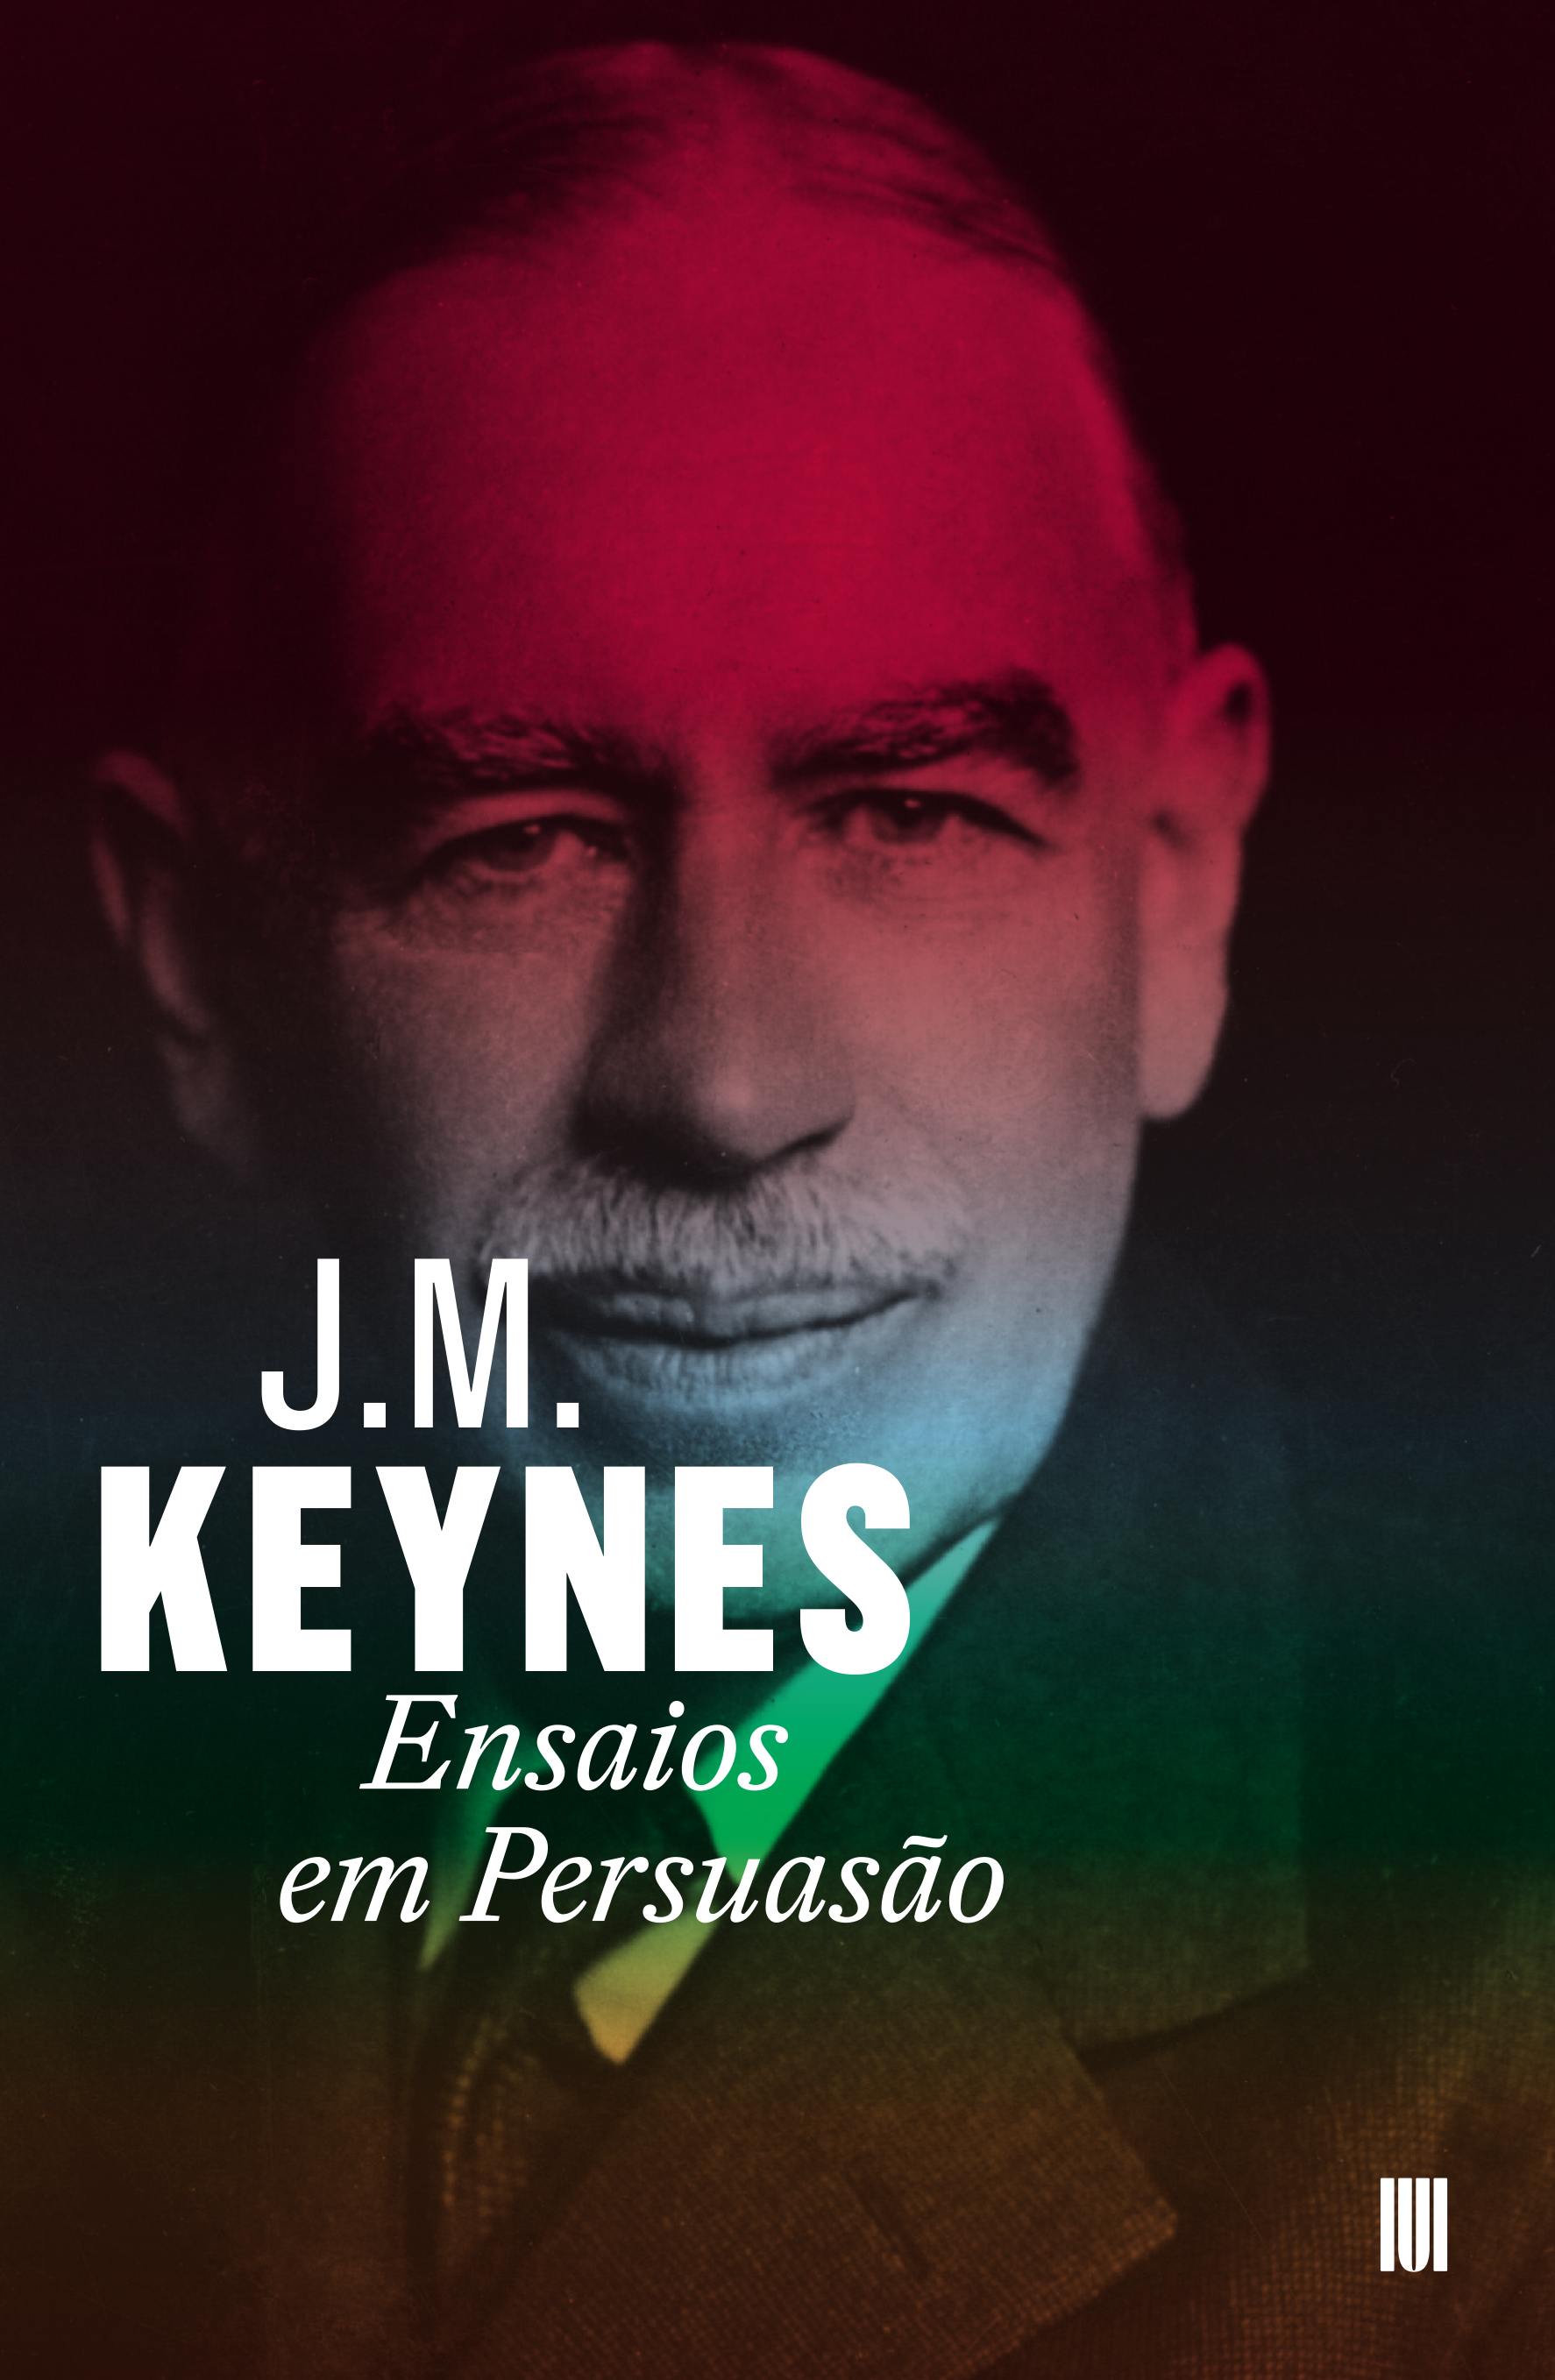 J. M. Keynes - Ensaios em Persuasão